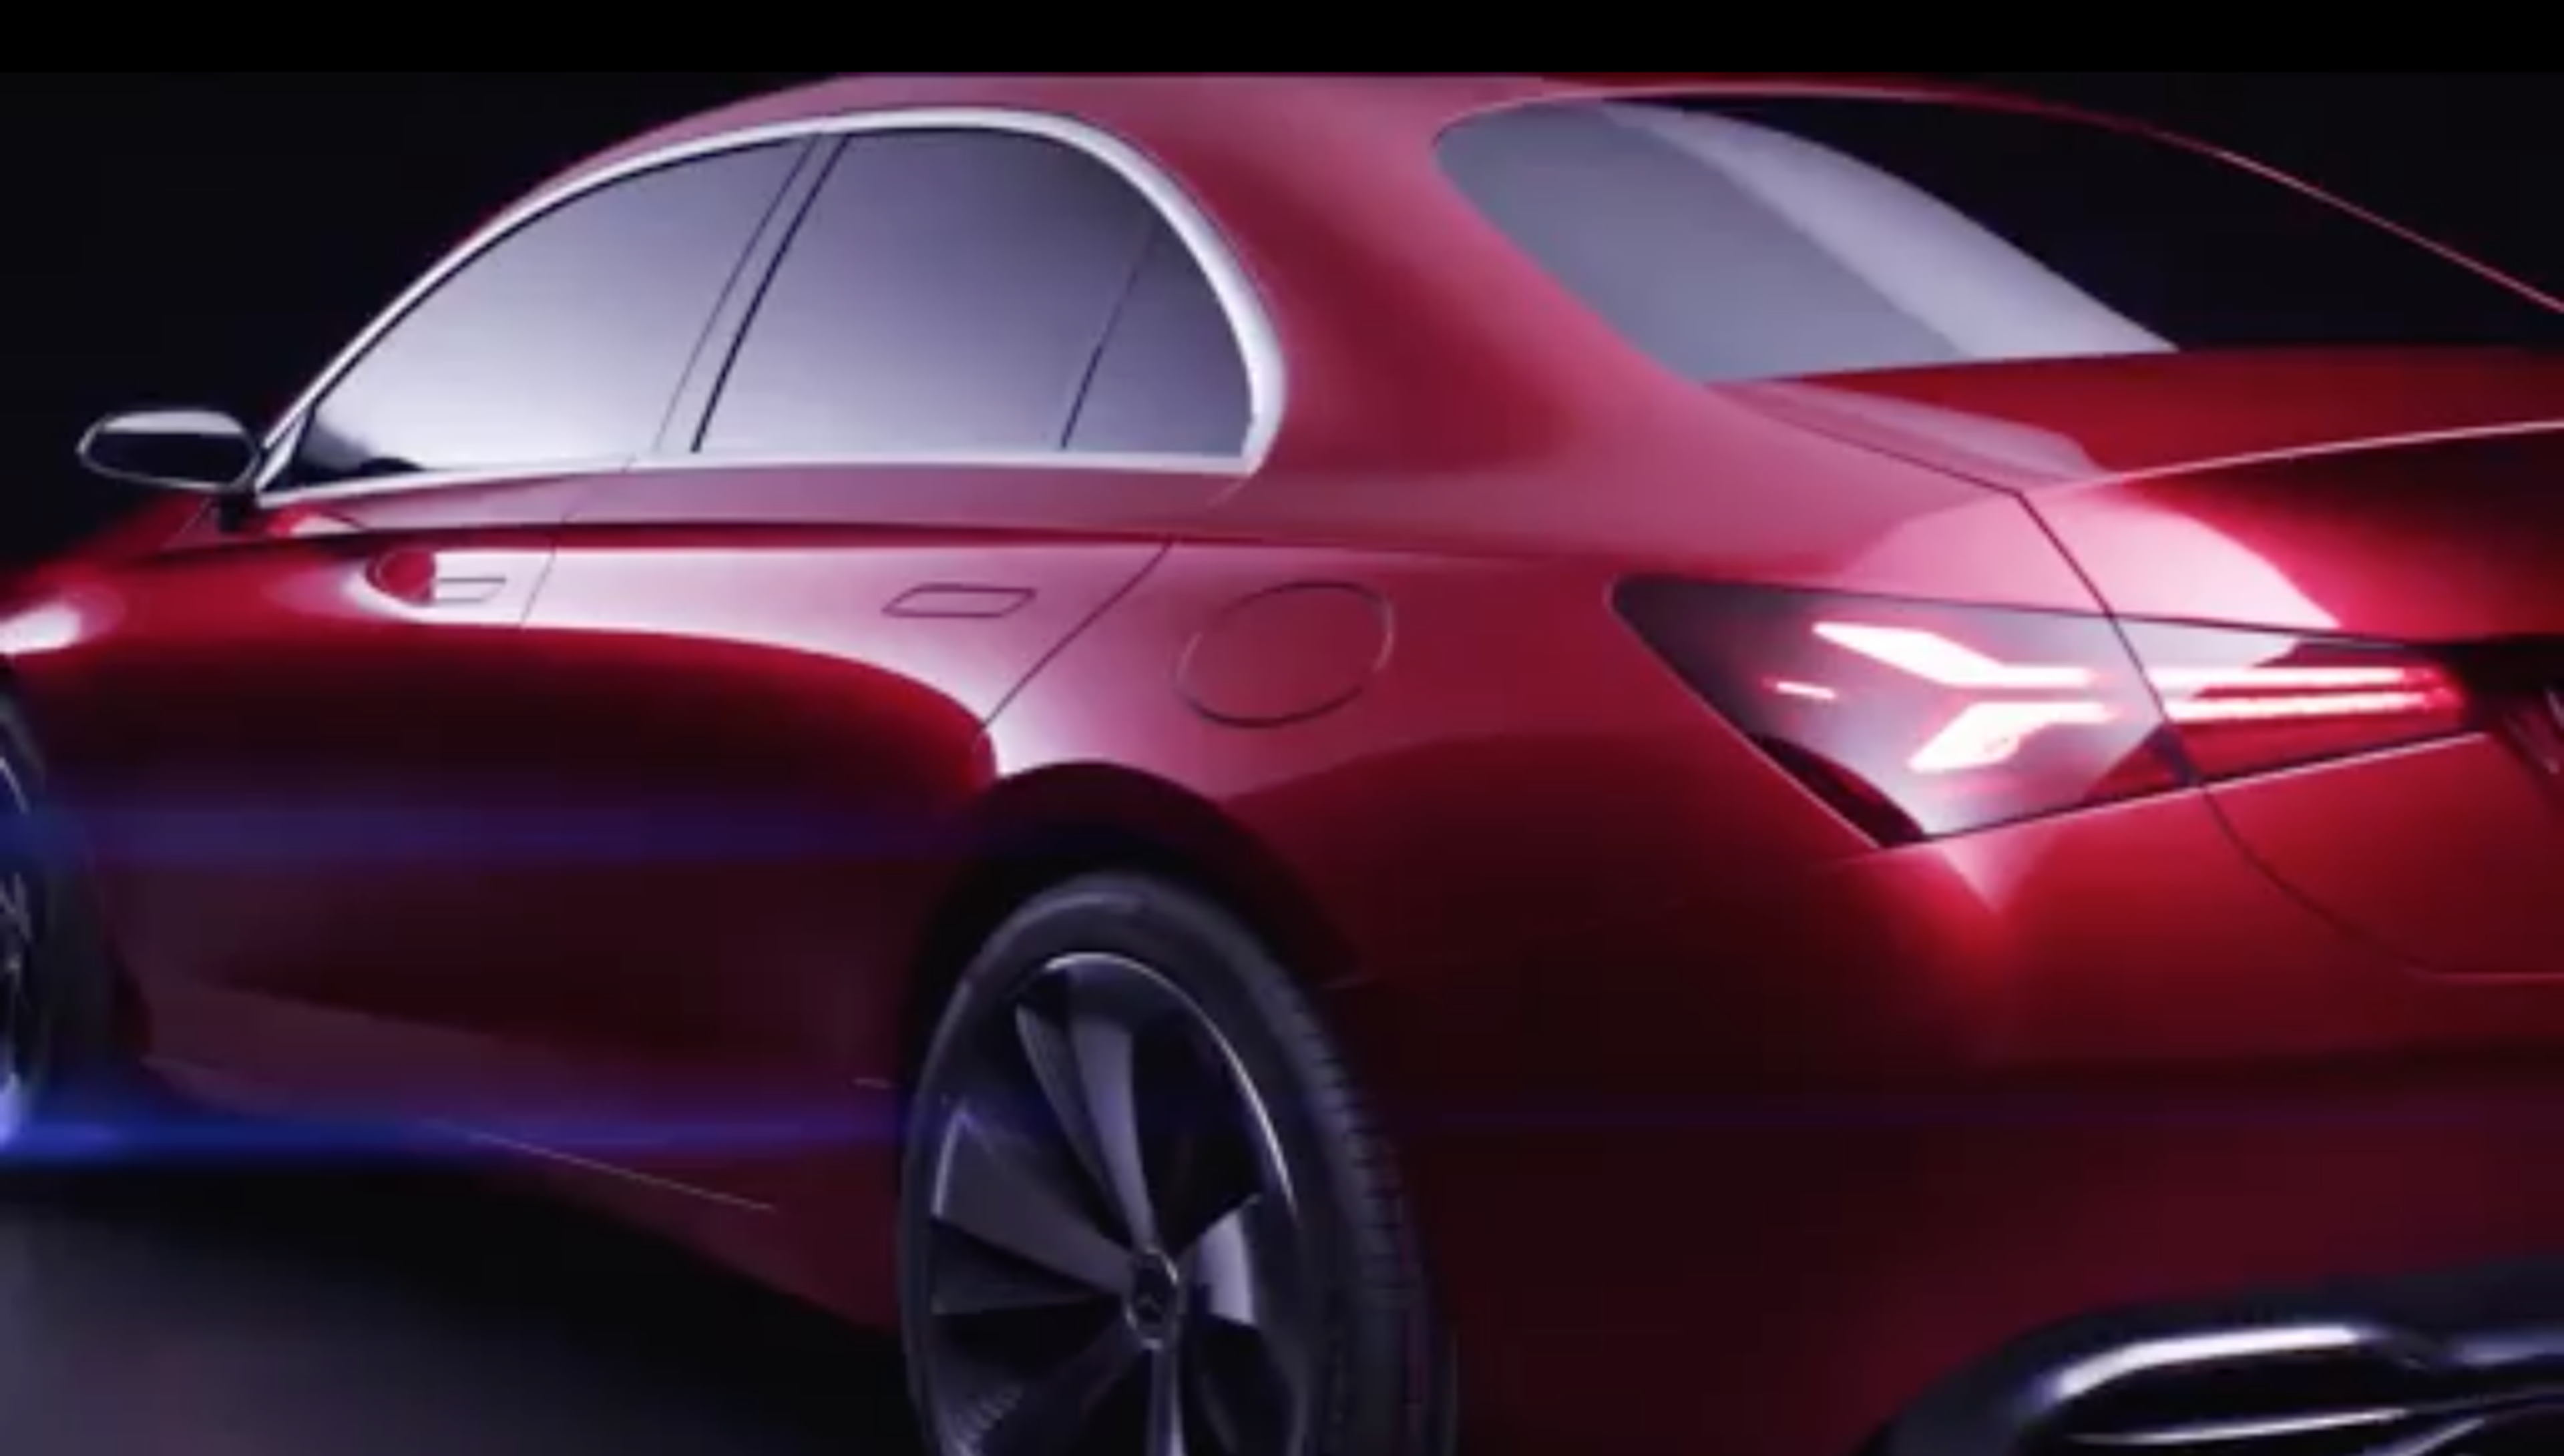 VÍDEO: Más imágenes del futuro cambio de 'look' de Mercedes